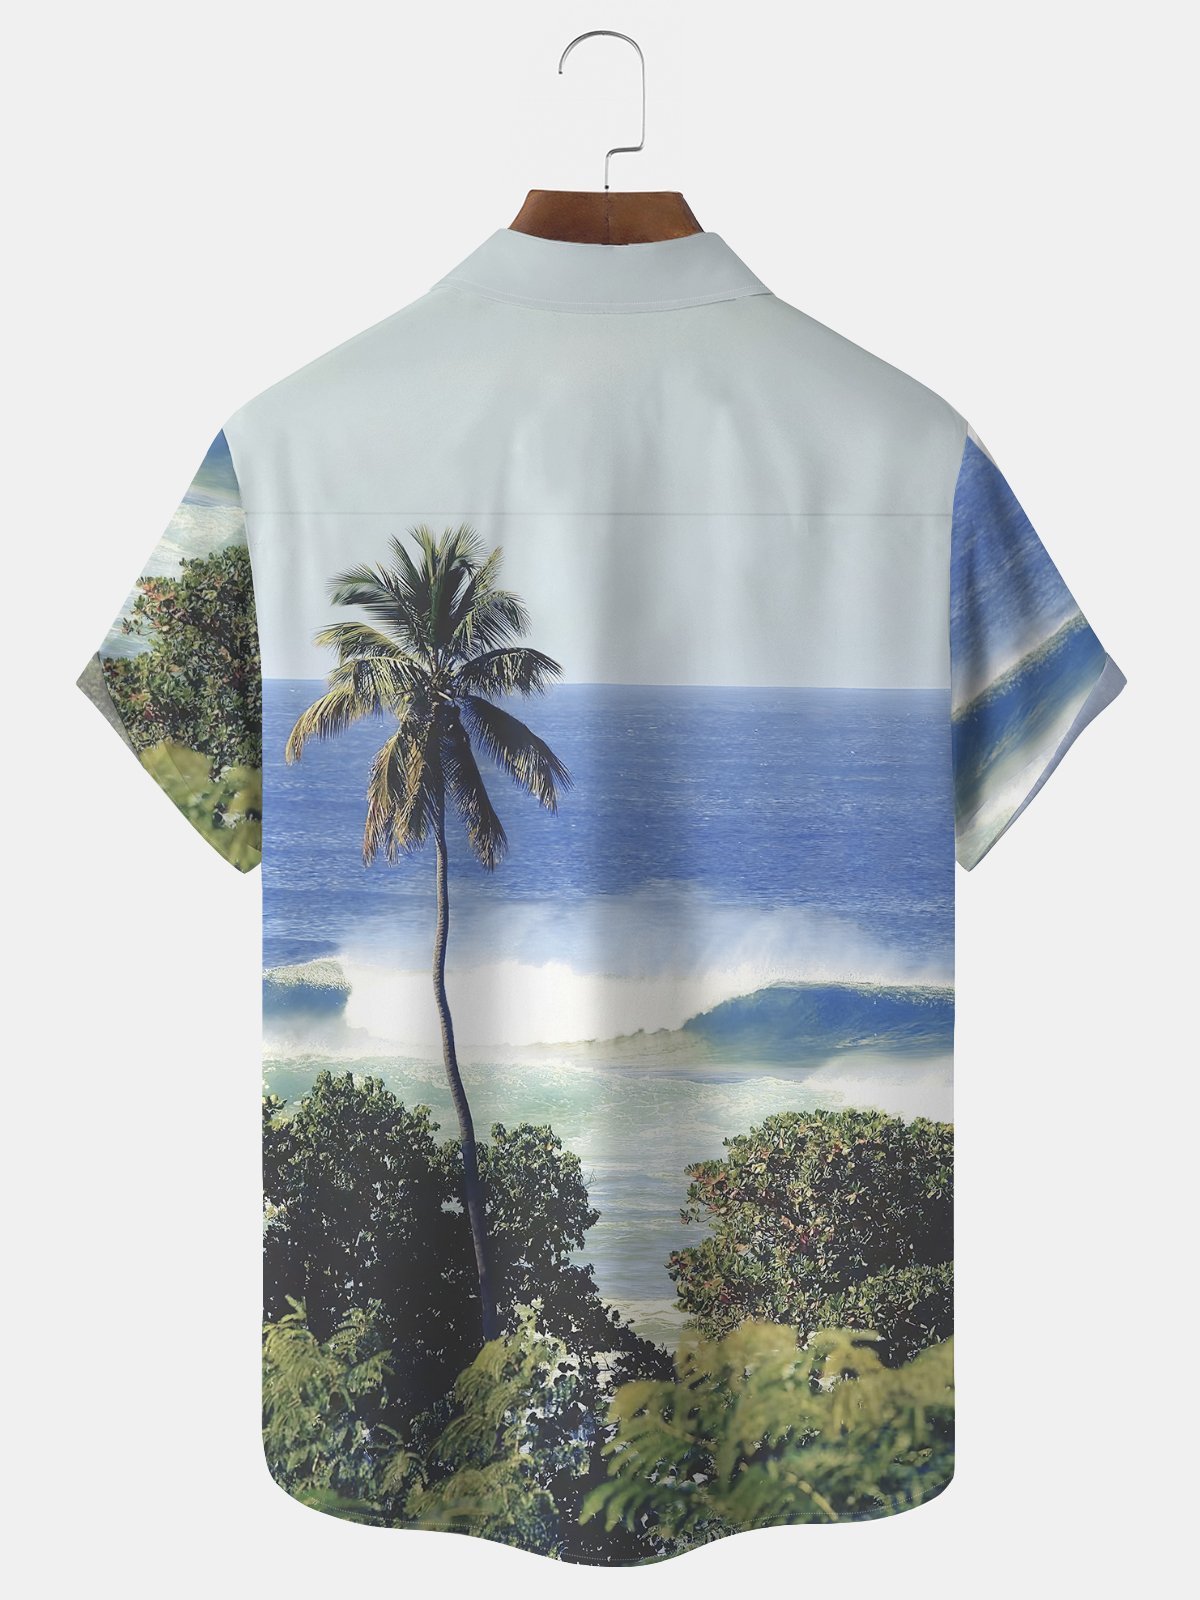 Royaura Seaside Coconut Tree Scenery Print Beach Men's Hawaiian Oversized Shirt with Pockets